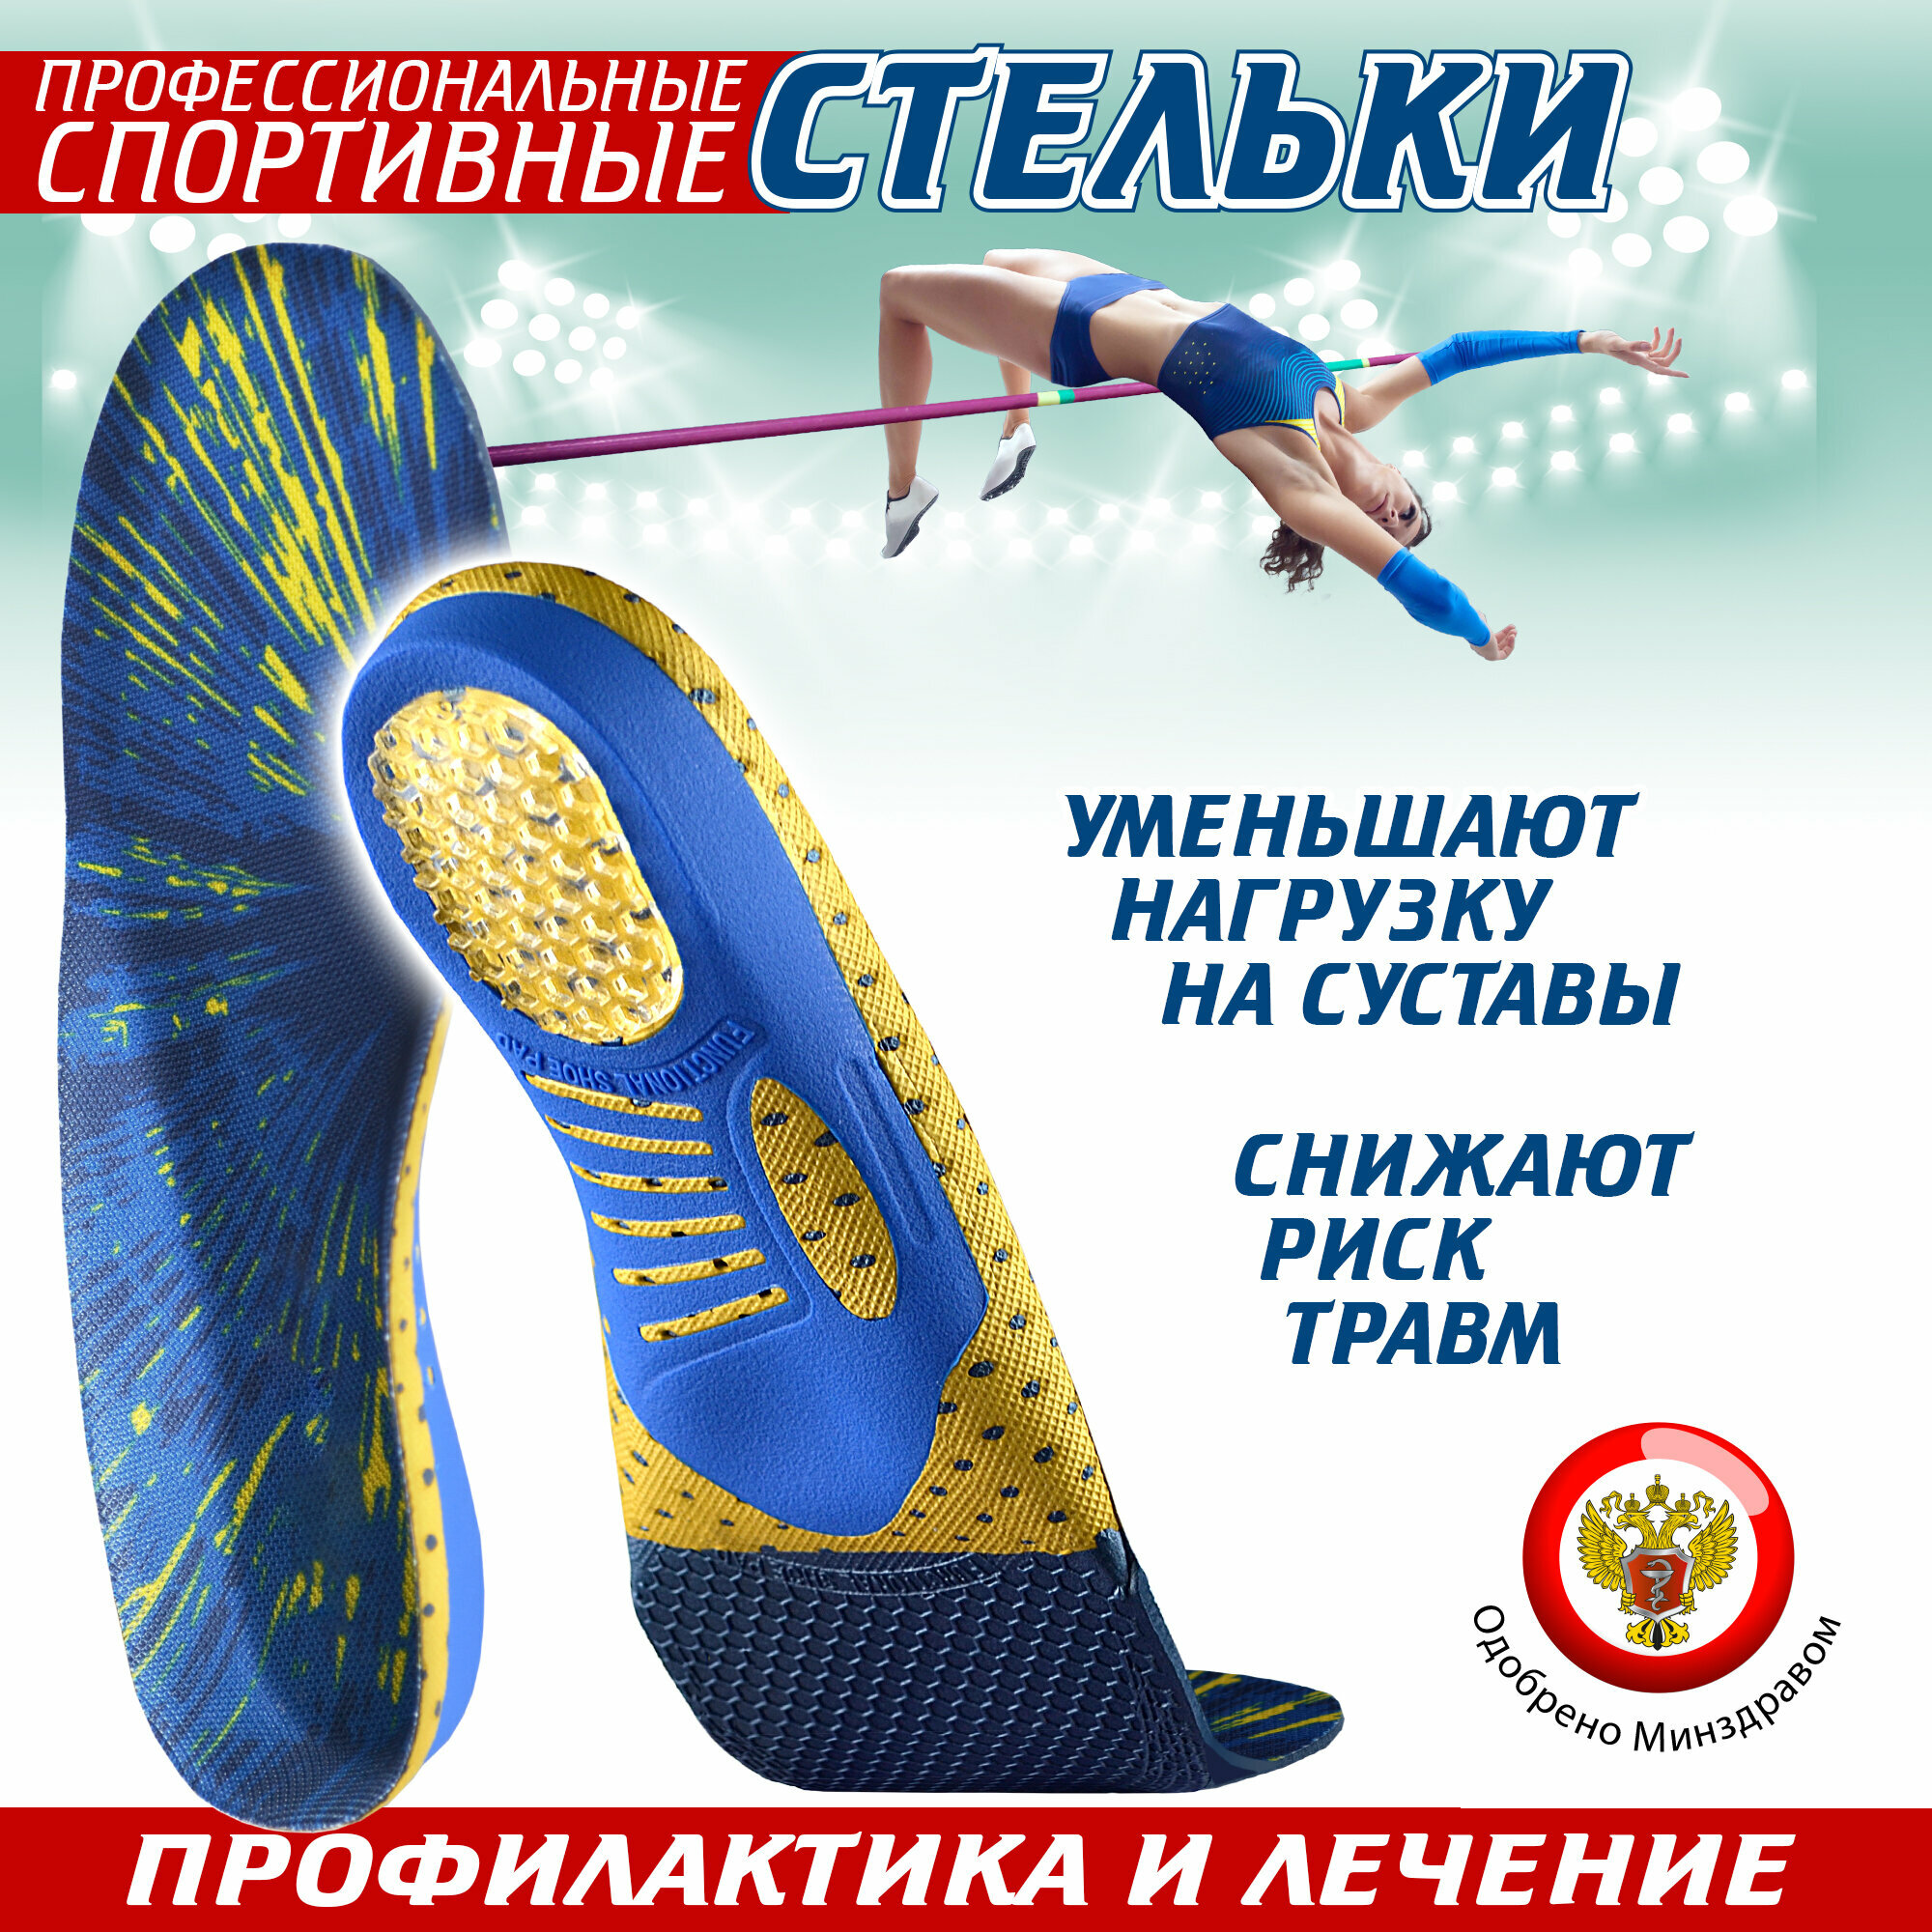 Ортопедические стельки спортивные Sport, для обуви (38)